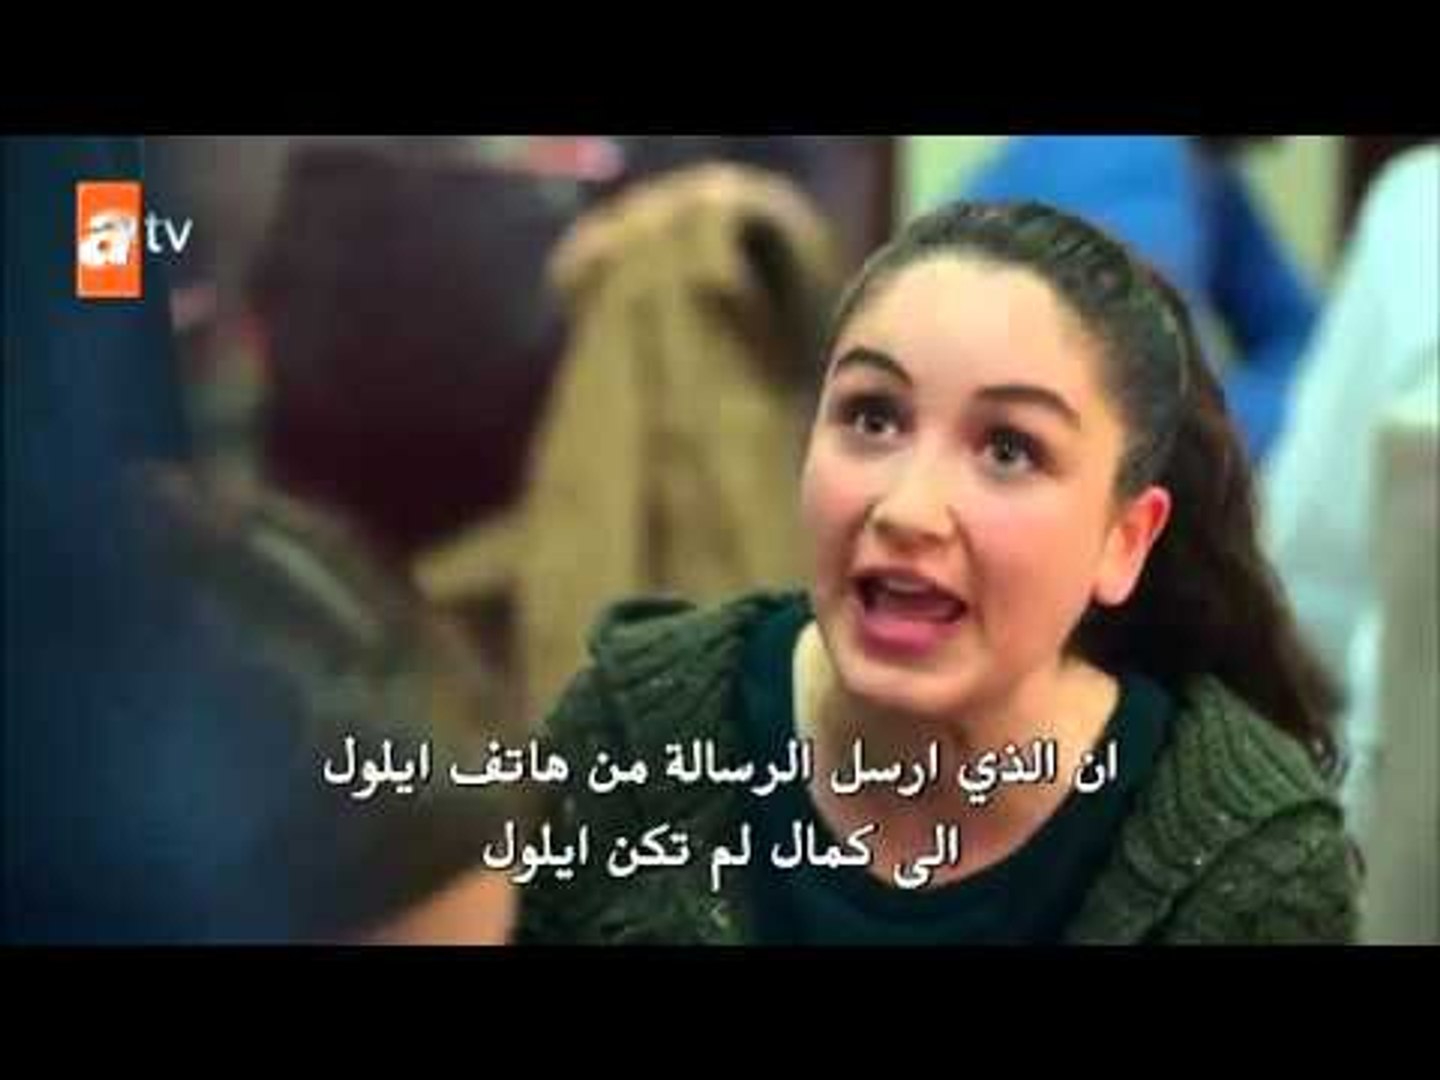 الأزهار الحزينة الموسم الثاني الحلقة 7 مترجمة للعربية Video Dailymotion